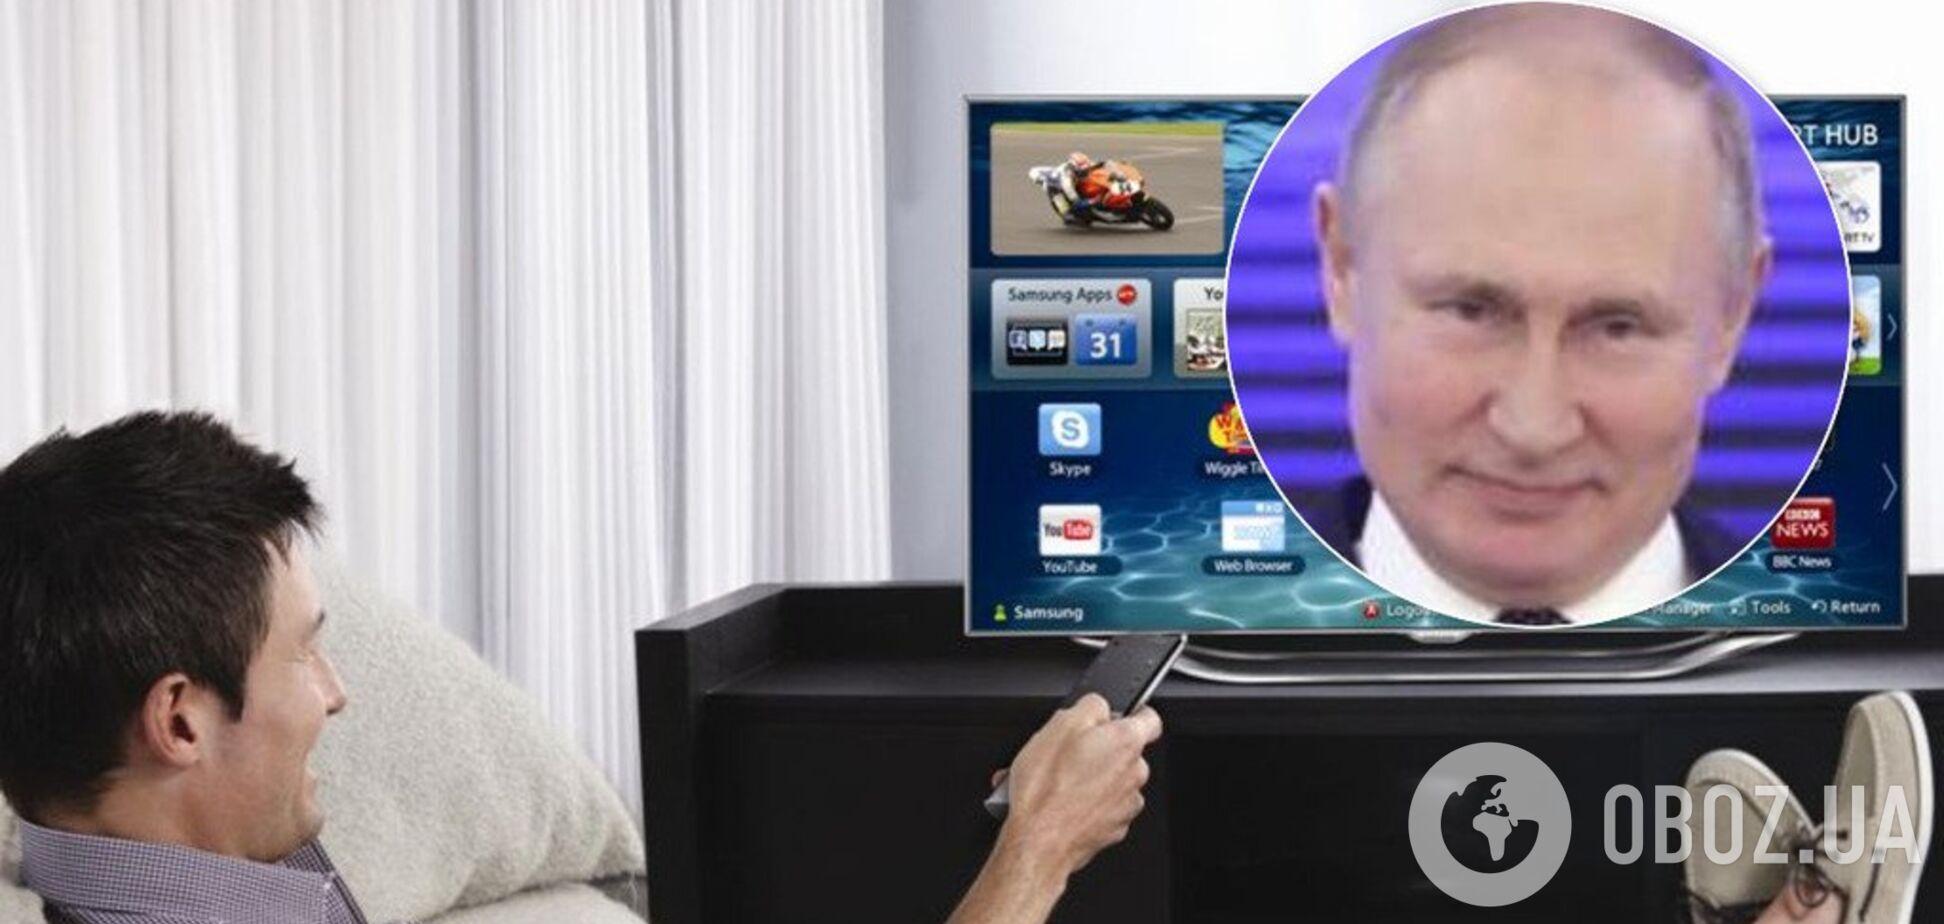 Український телеканал попався на пропаганді Путіна: про що мова